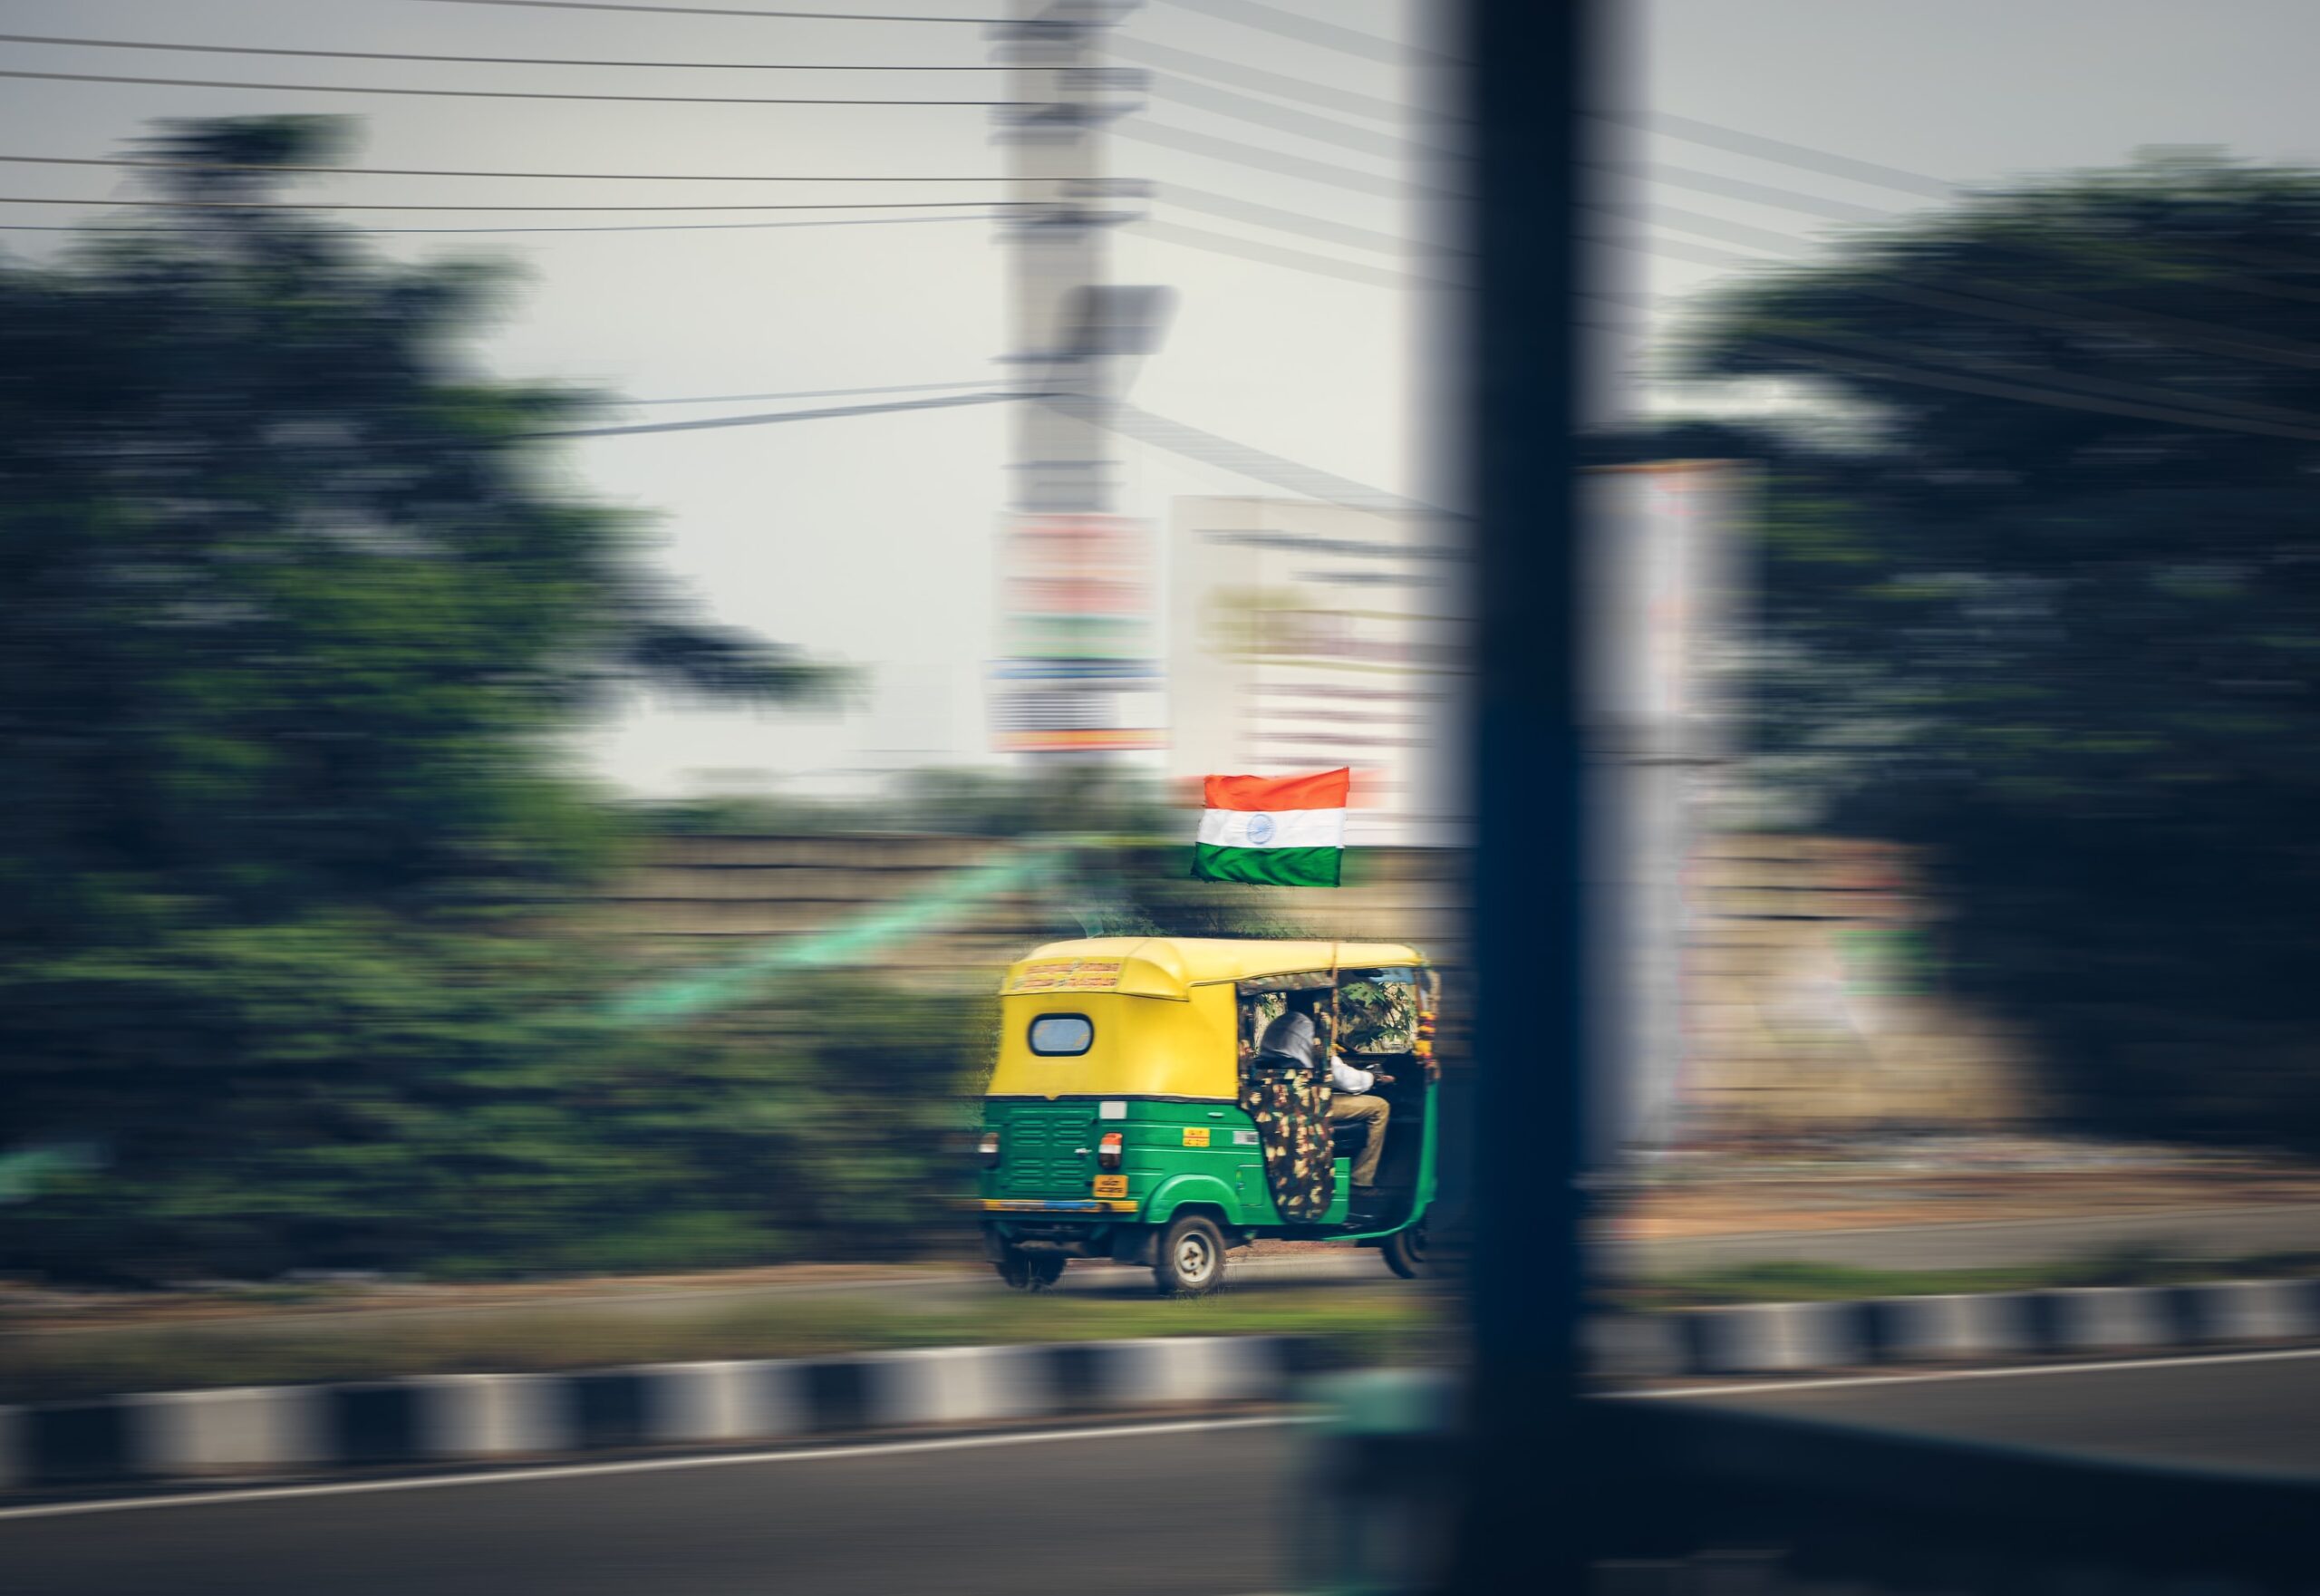 ZR626CKWGVCGJFQJ3EEGQO6CEA scaled - راه اندازی صرافی کوین بیس در هند با مشکل دروازه پرداخت مواجه شد